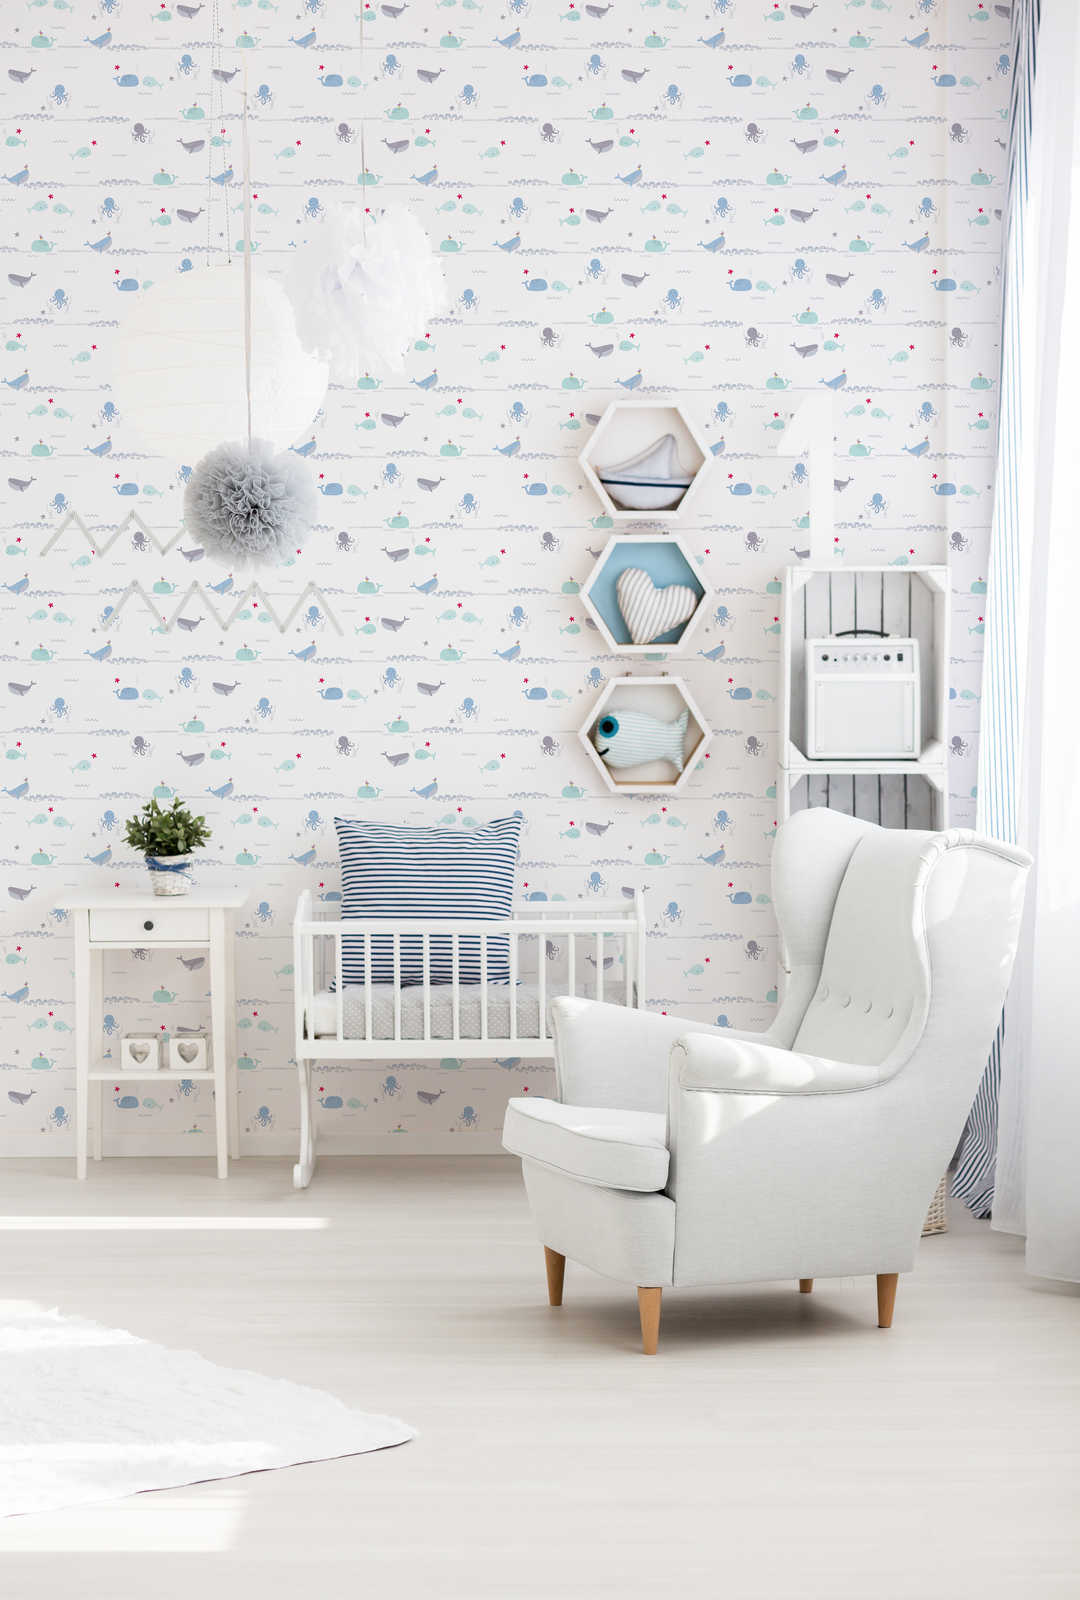             Kinderkamer behang zeedieren - blauw, grijs, wit
        